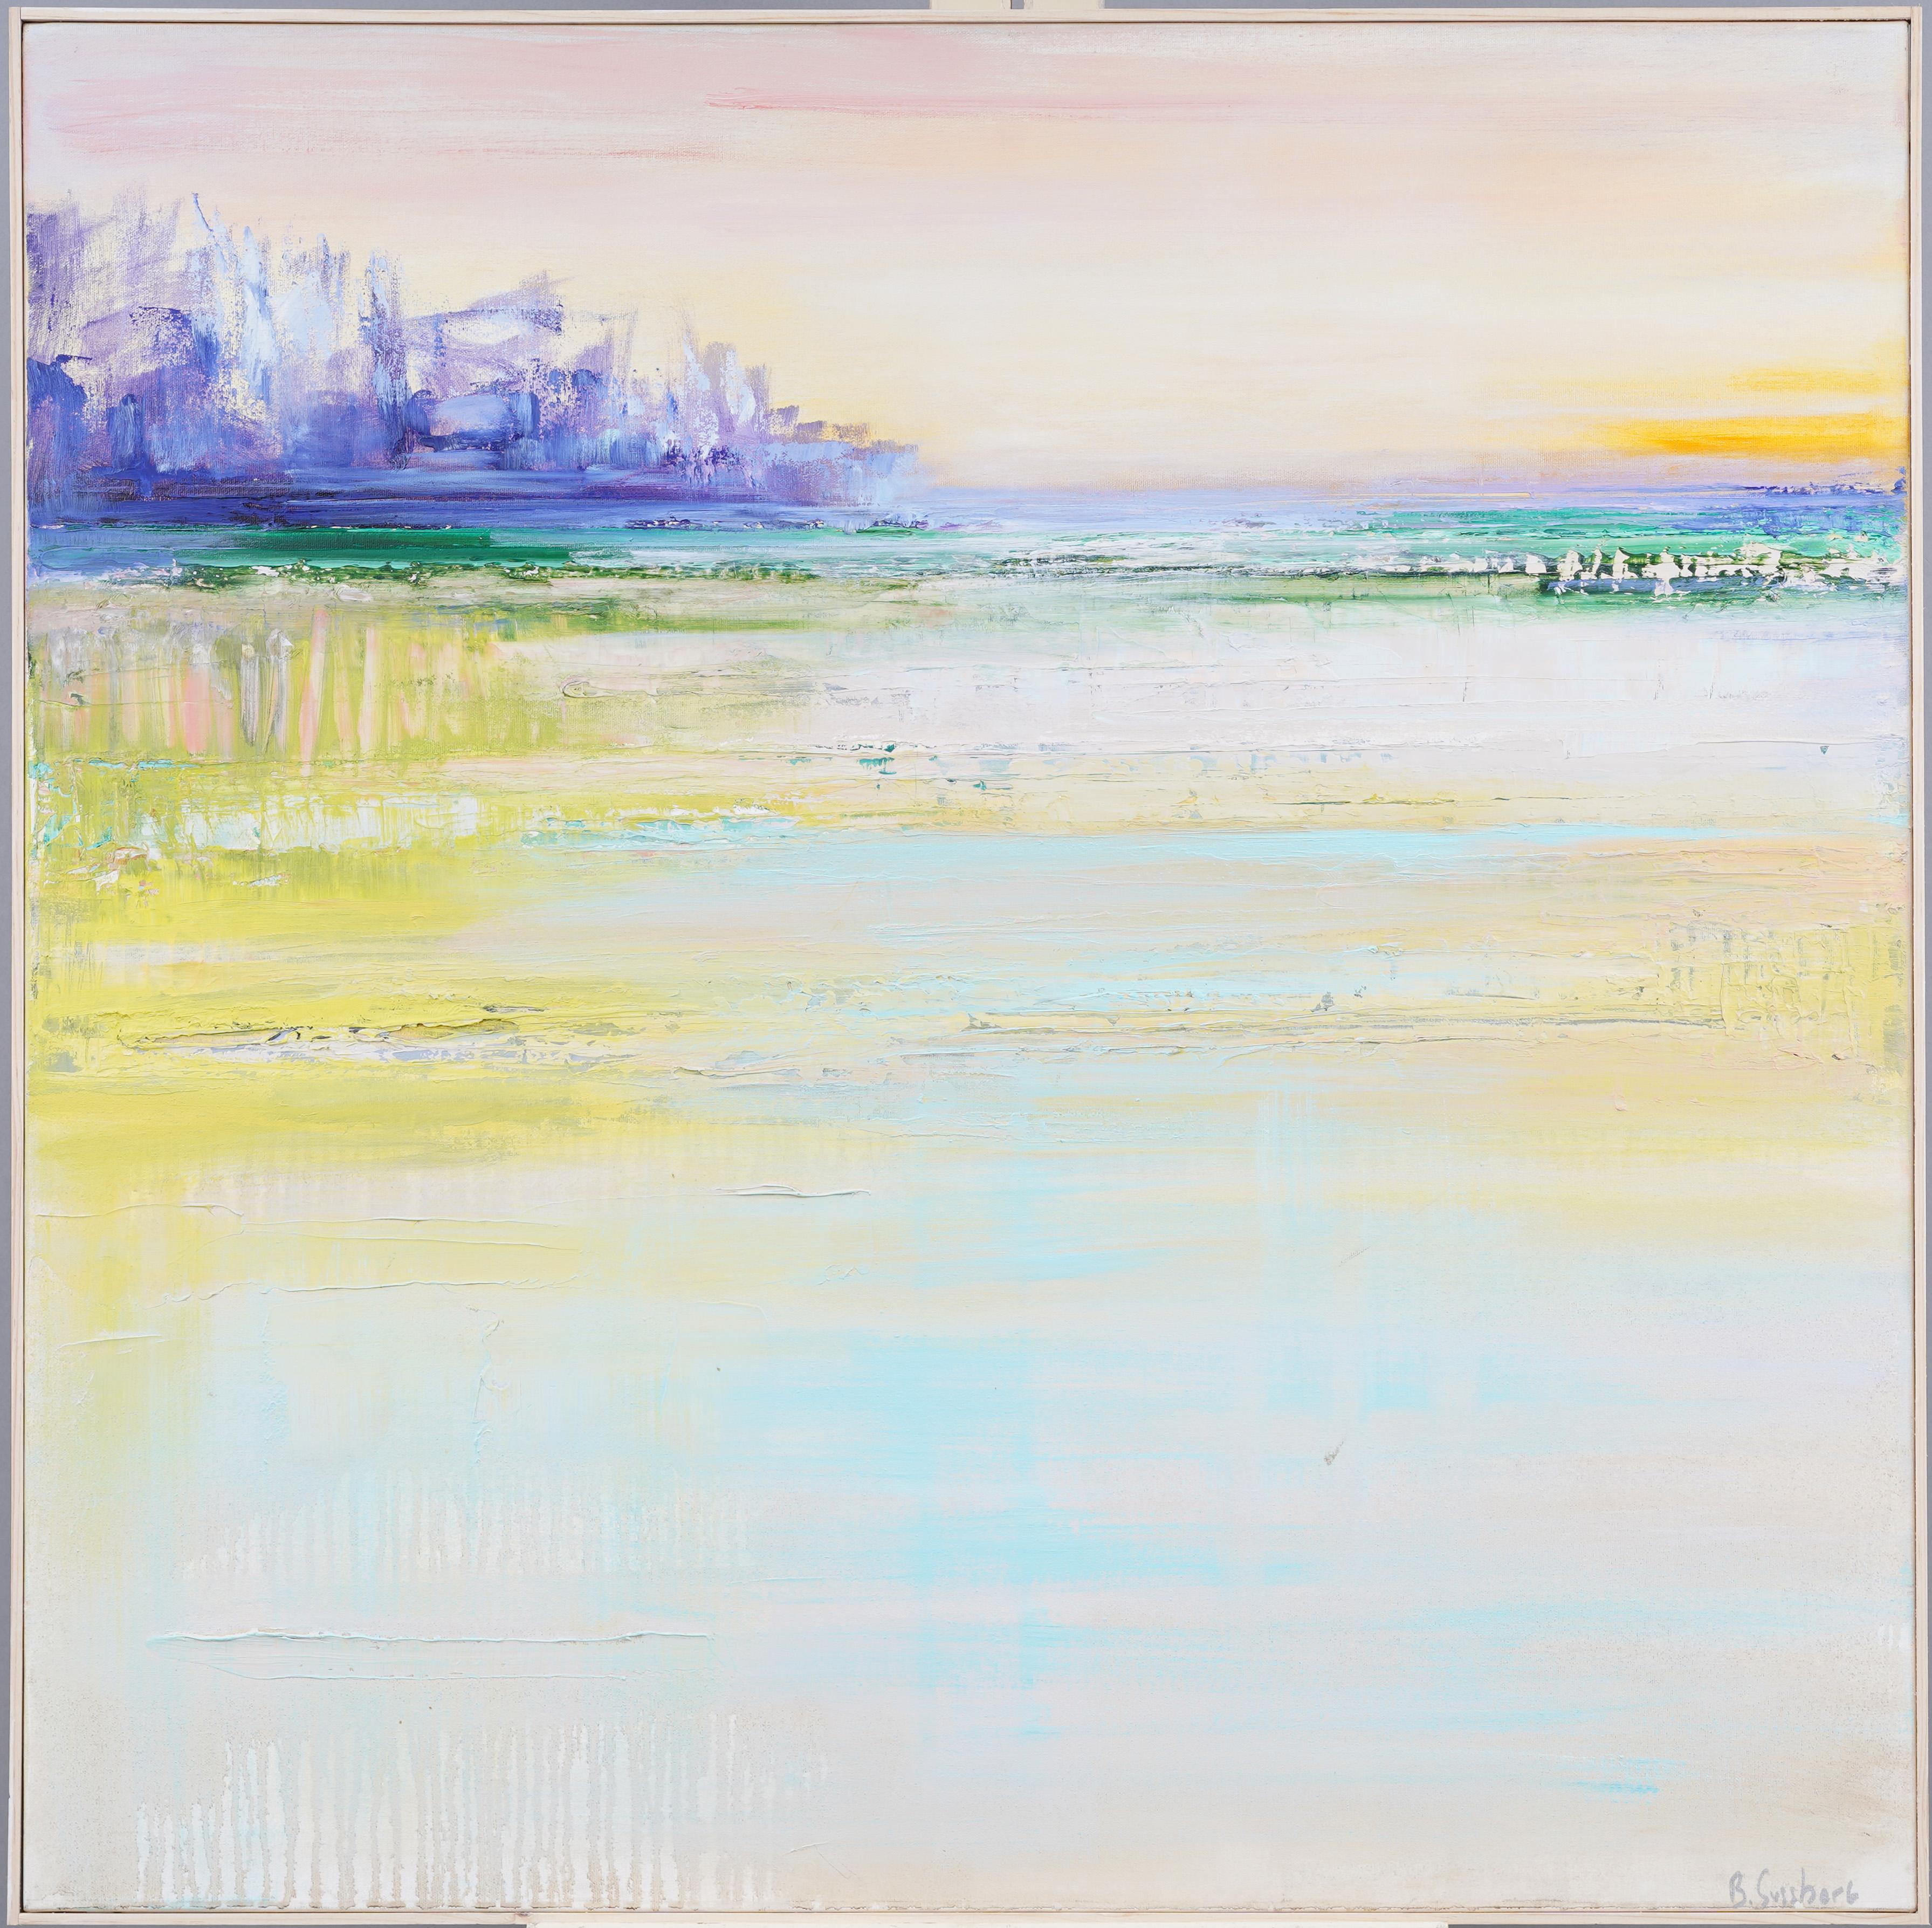 Landscape Painting Barbara J. Sussman - Coucher de soleil dans la baie de Hamptons Bay Signé Hamptons Long Island Beach Scene Grande peinture à l'huile